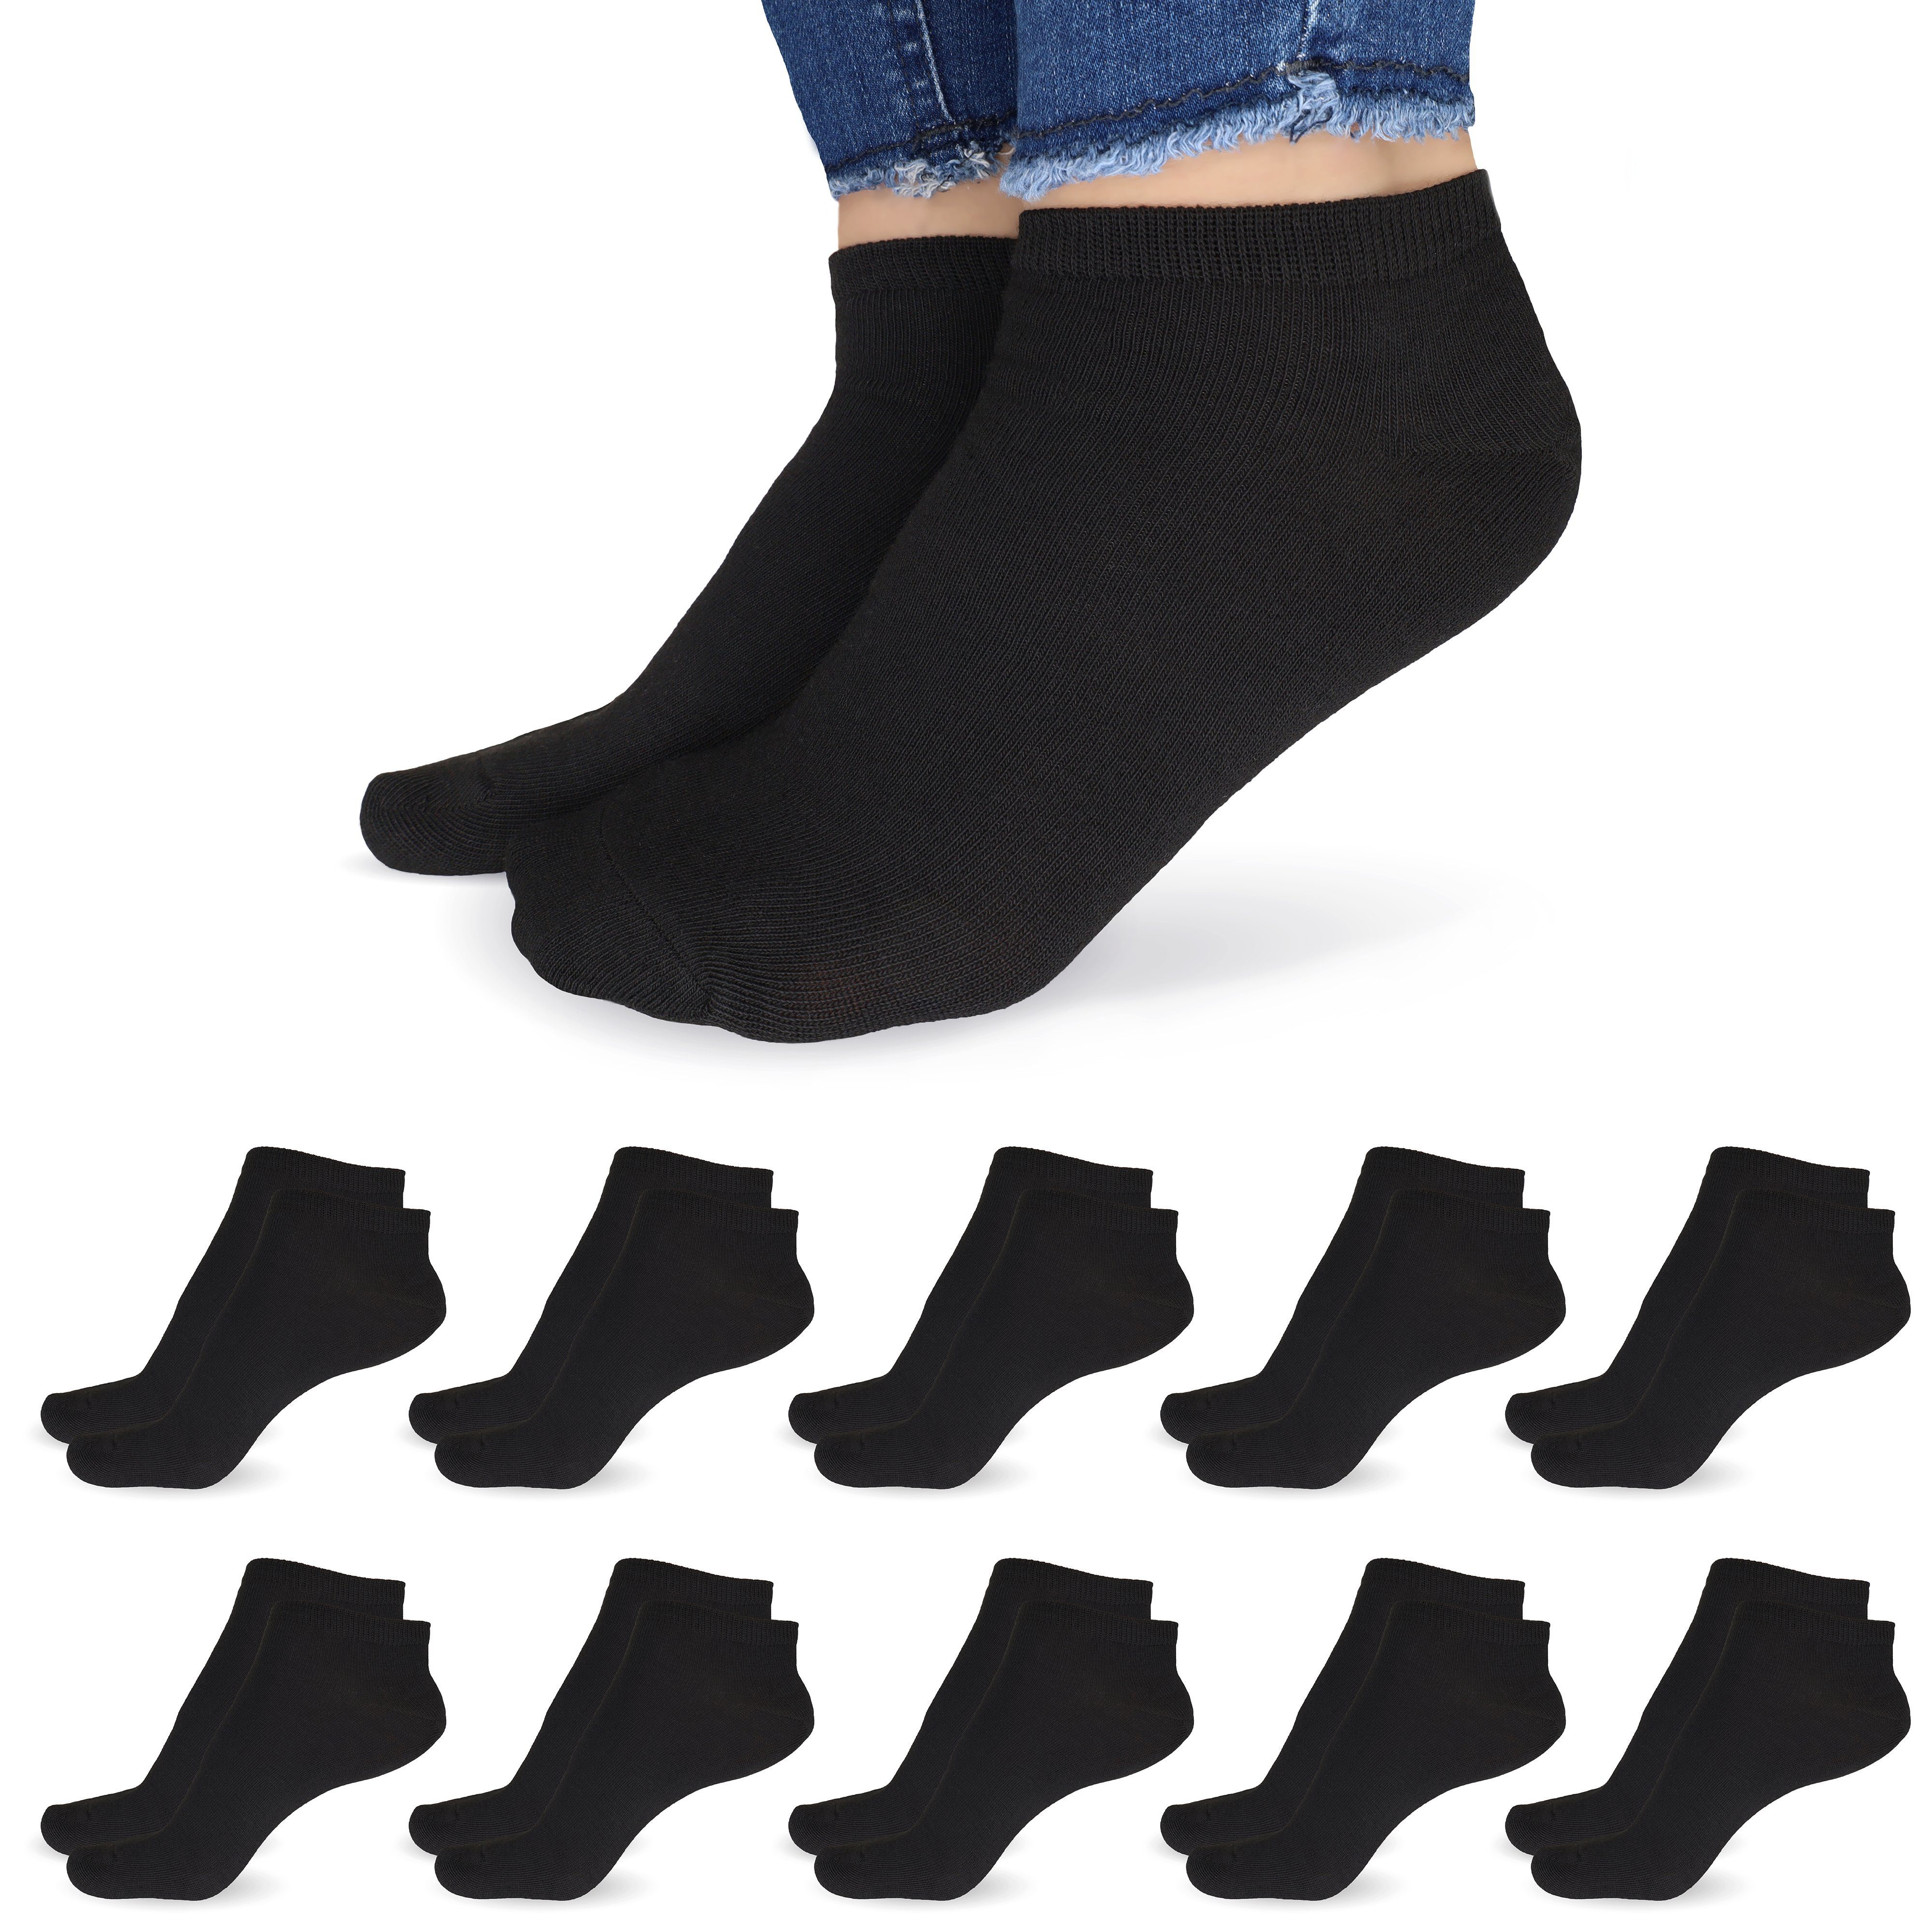 SO.I Freizeitsocken Sneaker Socken Damen & Herren aus Baumwolle (Größen 35-46, 5-20 Paar) atmungsaktive Unisex Socken 10x Schwarz